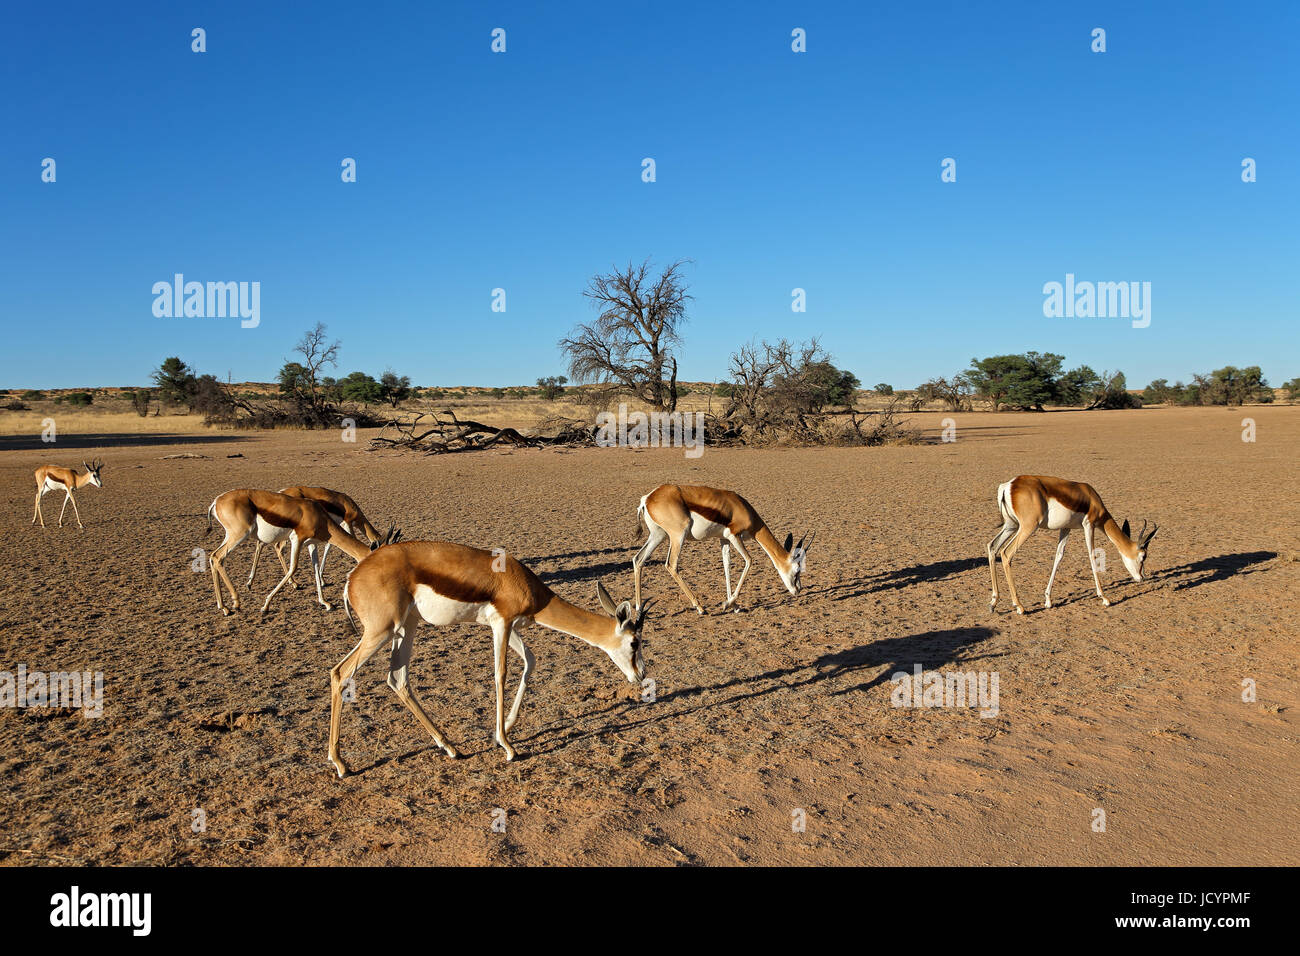 Un troupeau d'antilopes springboks (Antidorcas marsupialis) dans paysage de désert, Kalahari, Afrique du Sud Banque D'Images